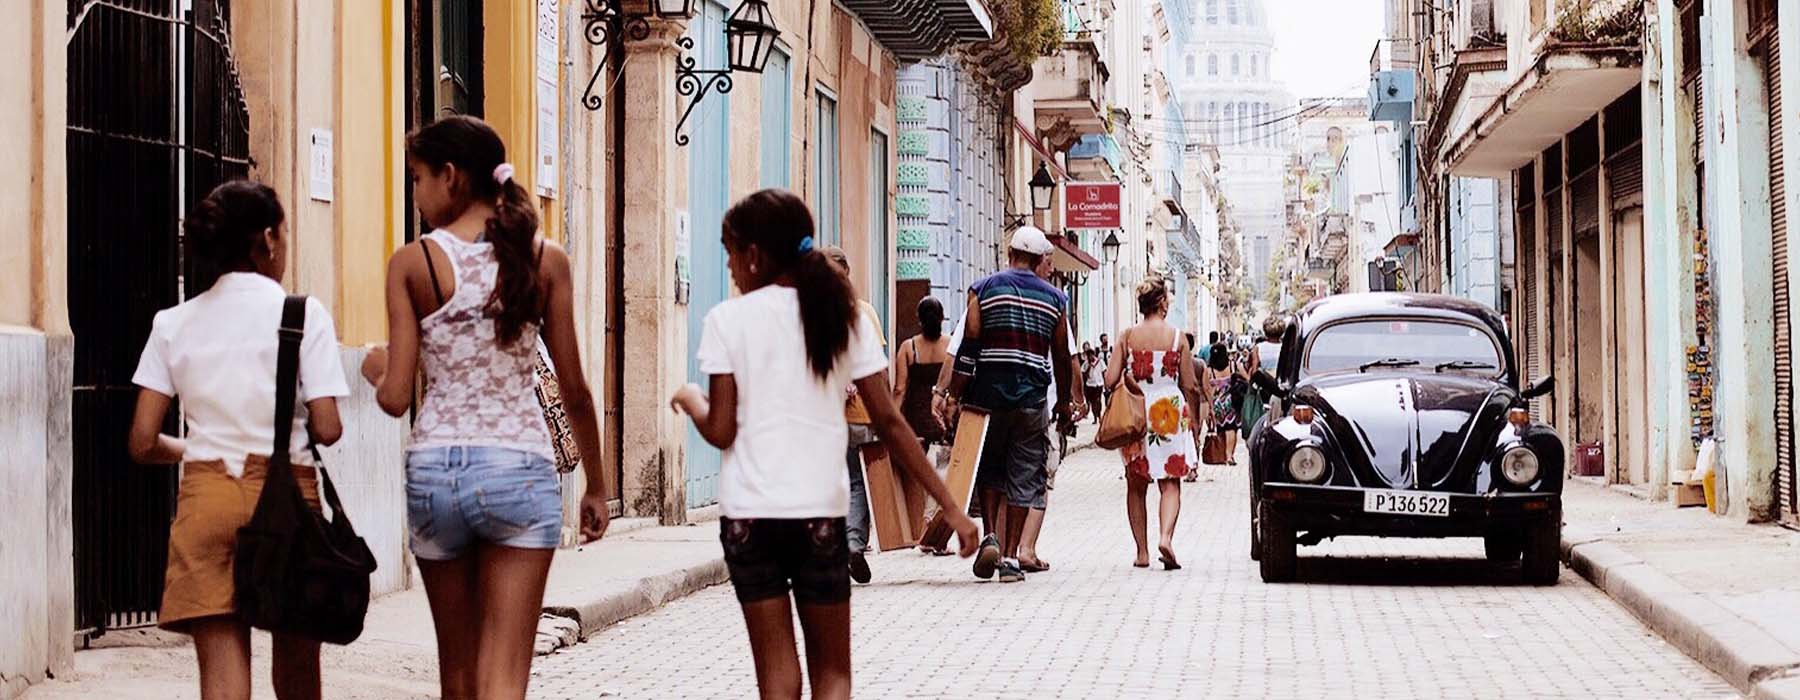 Vacances de Pâques Cuba